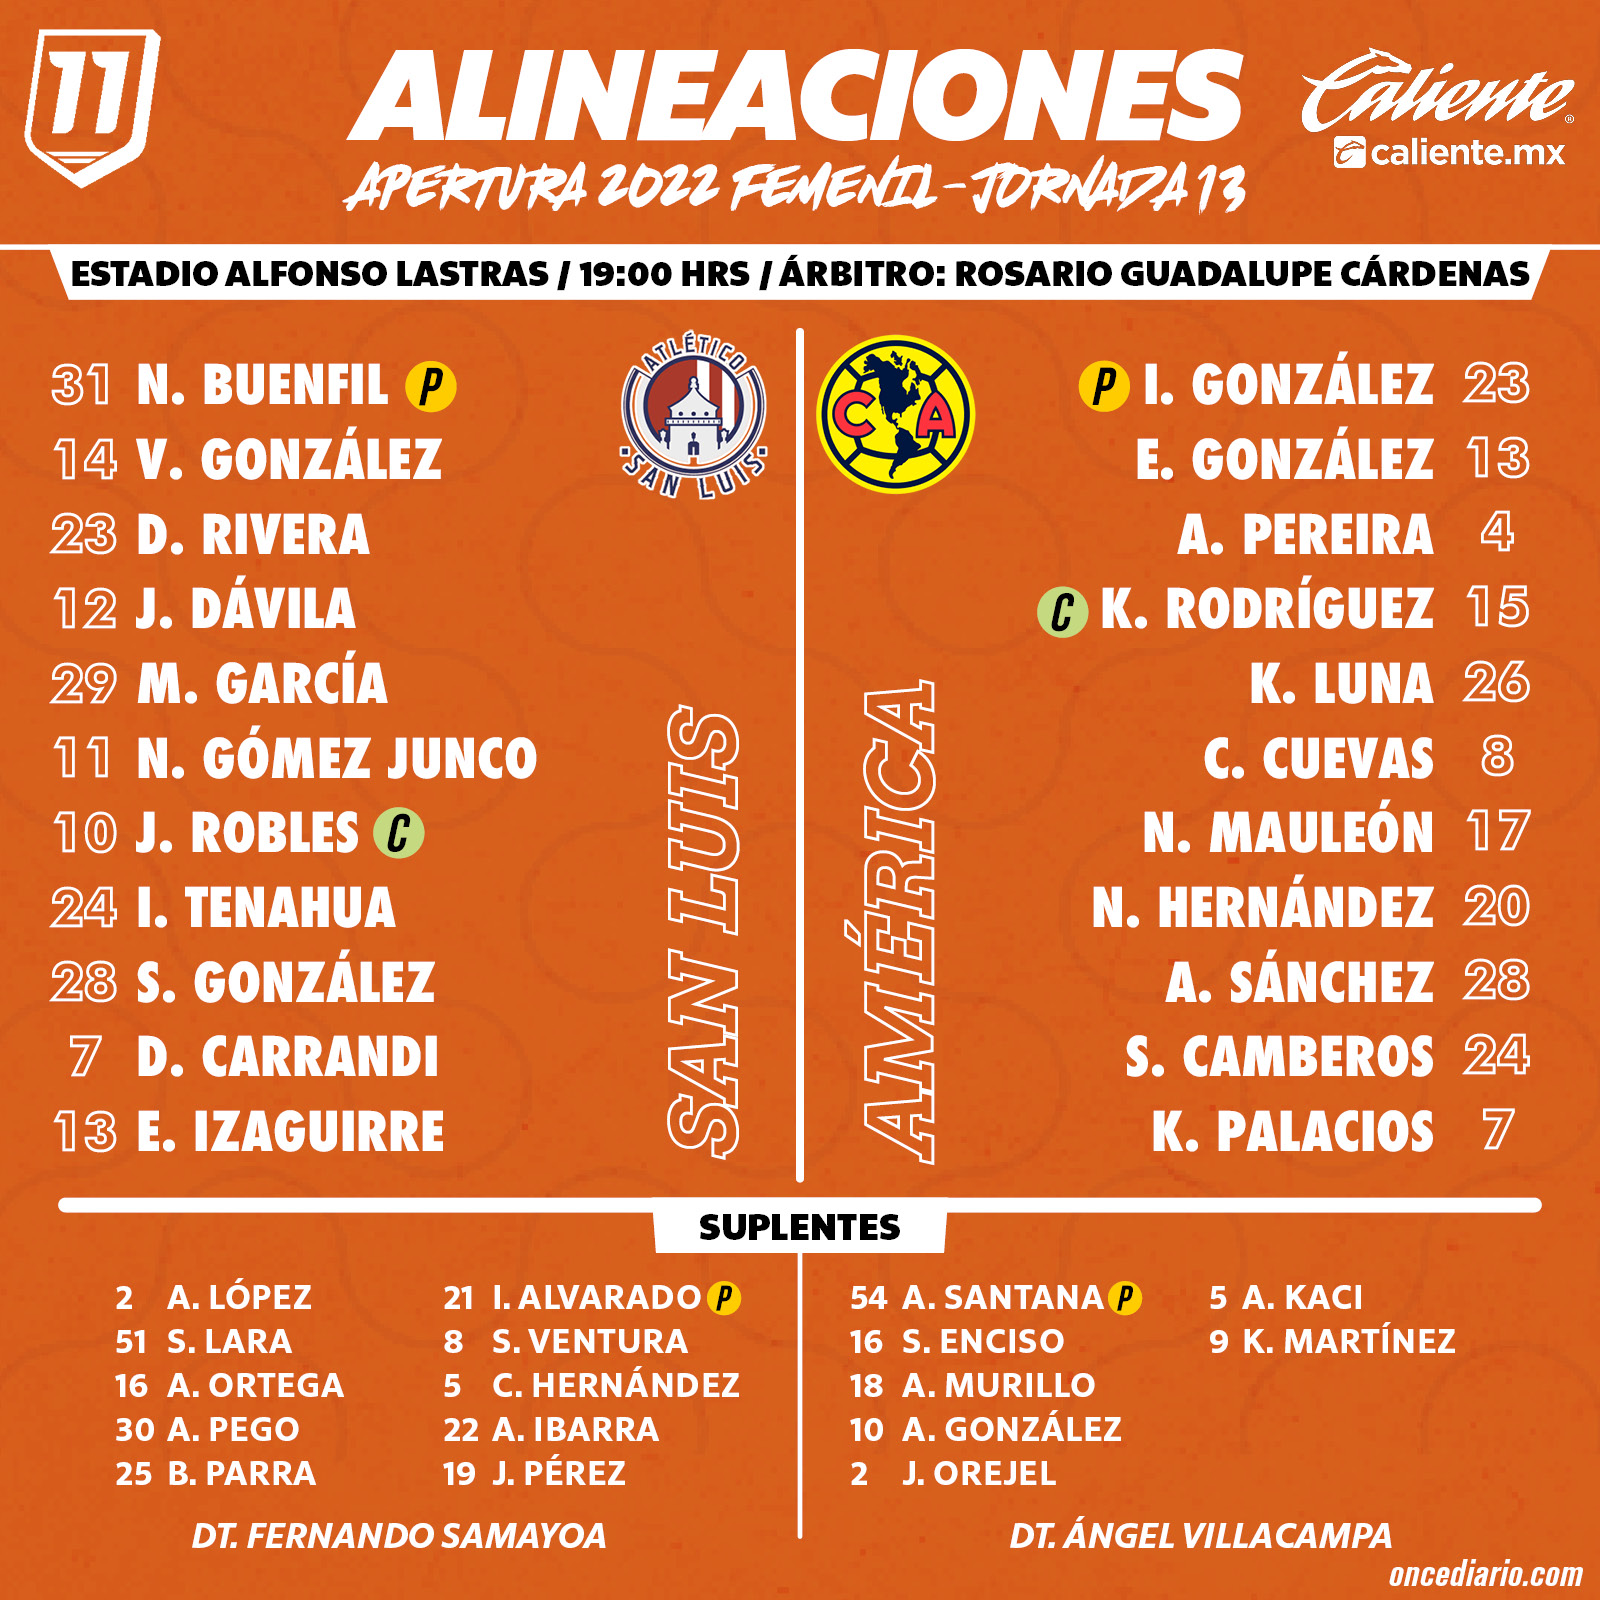 Alineaciones del Atlético de San Luis Femenil vs. América Femenil